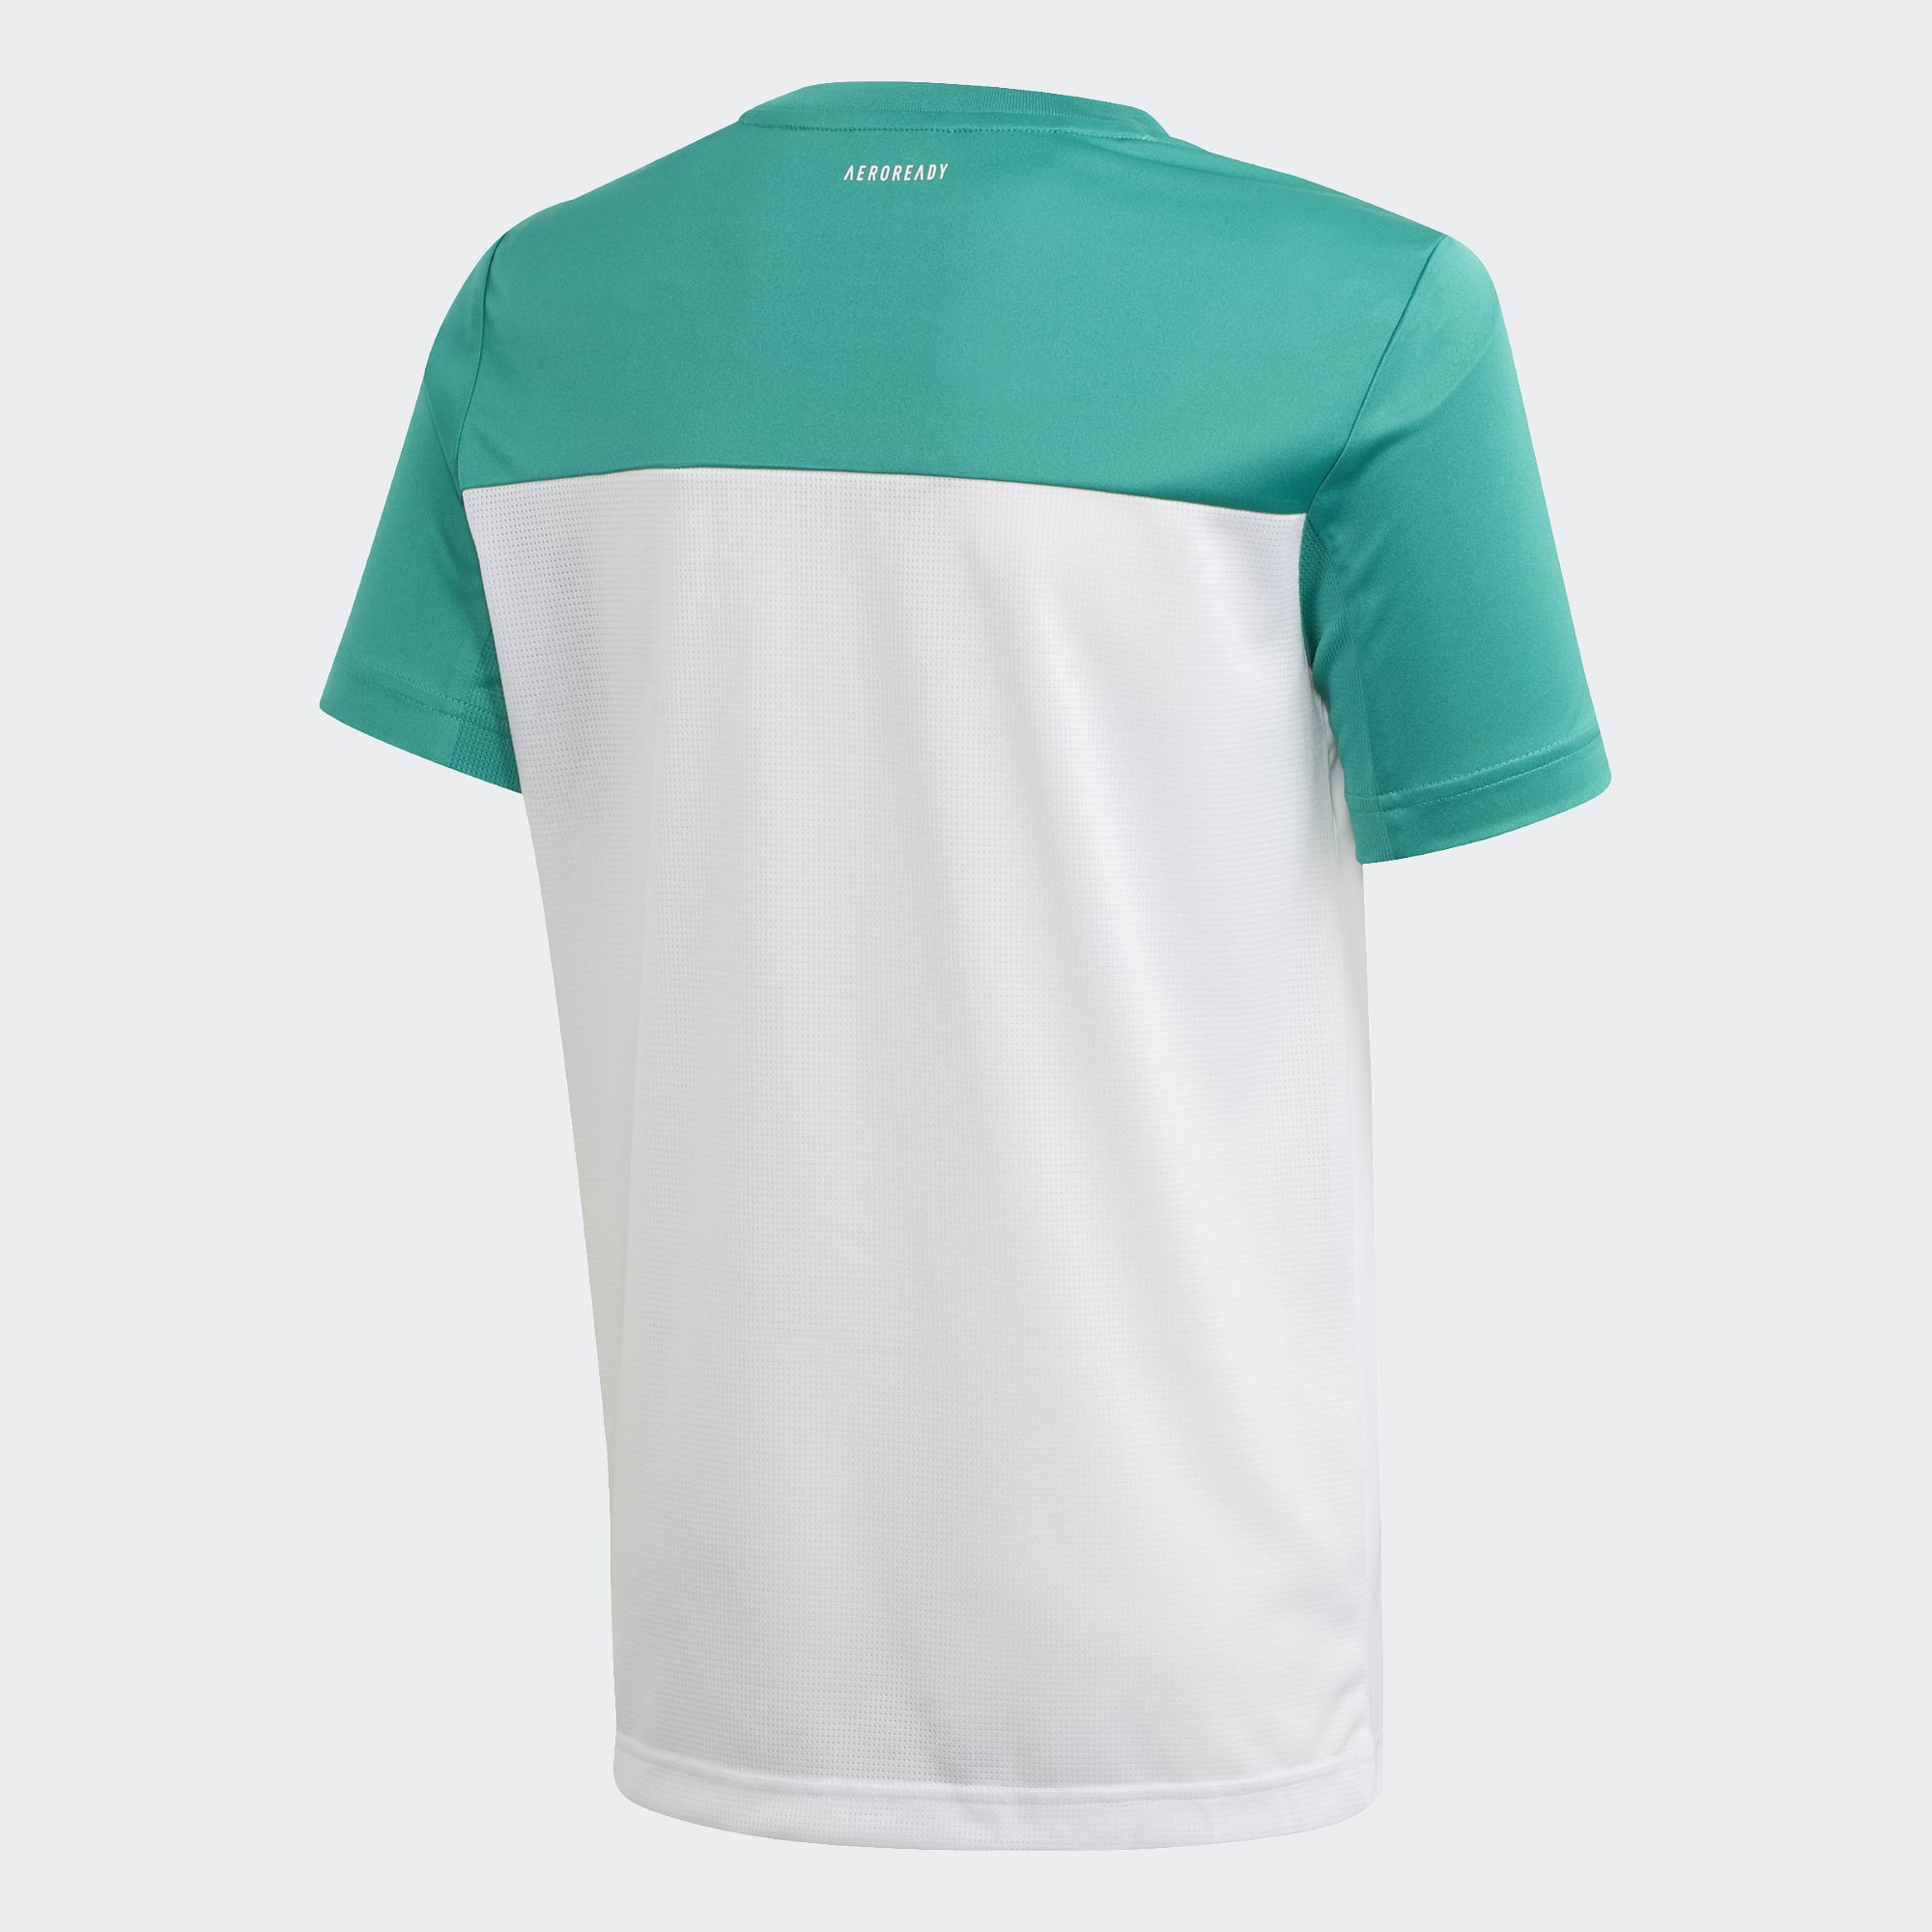 Adidas Kinder T-Shirt Equip - weiß/grün